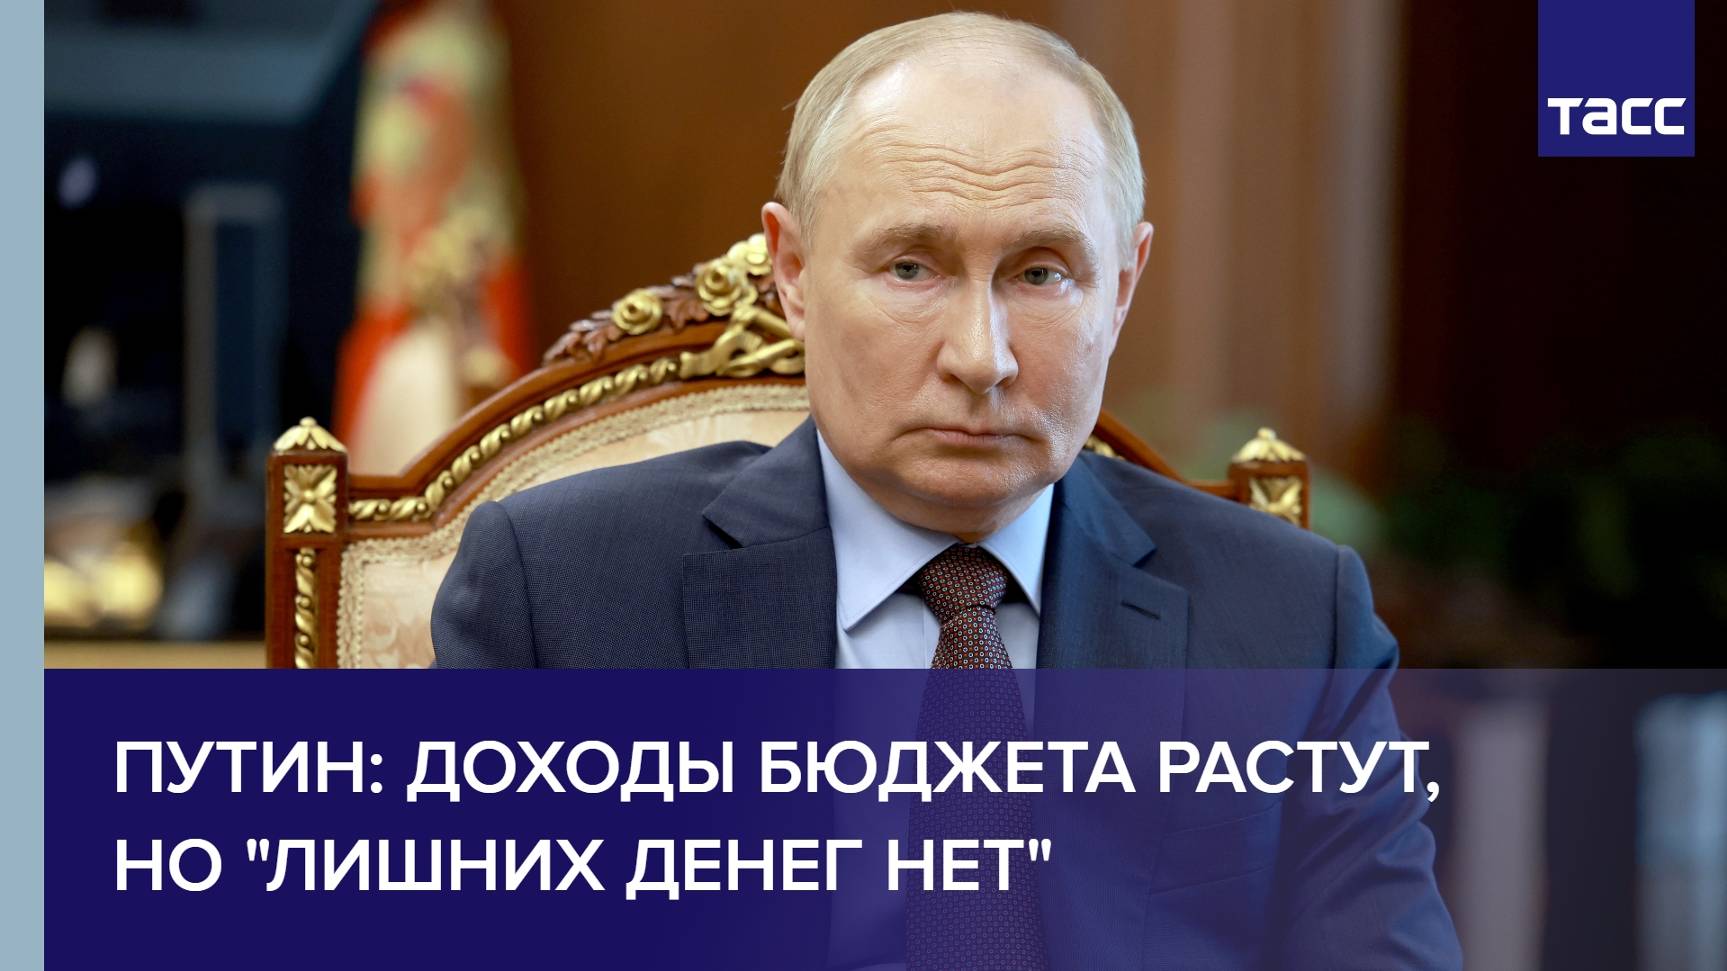 Путин: доходы бюджета растут, но "лишних денег нет"